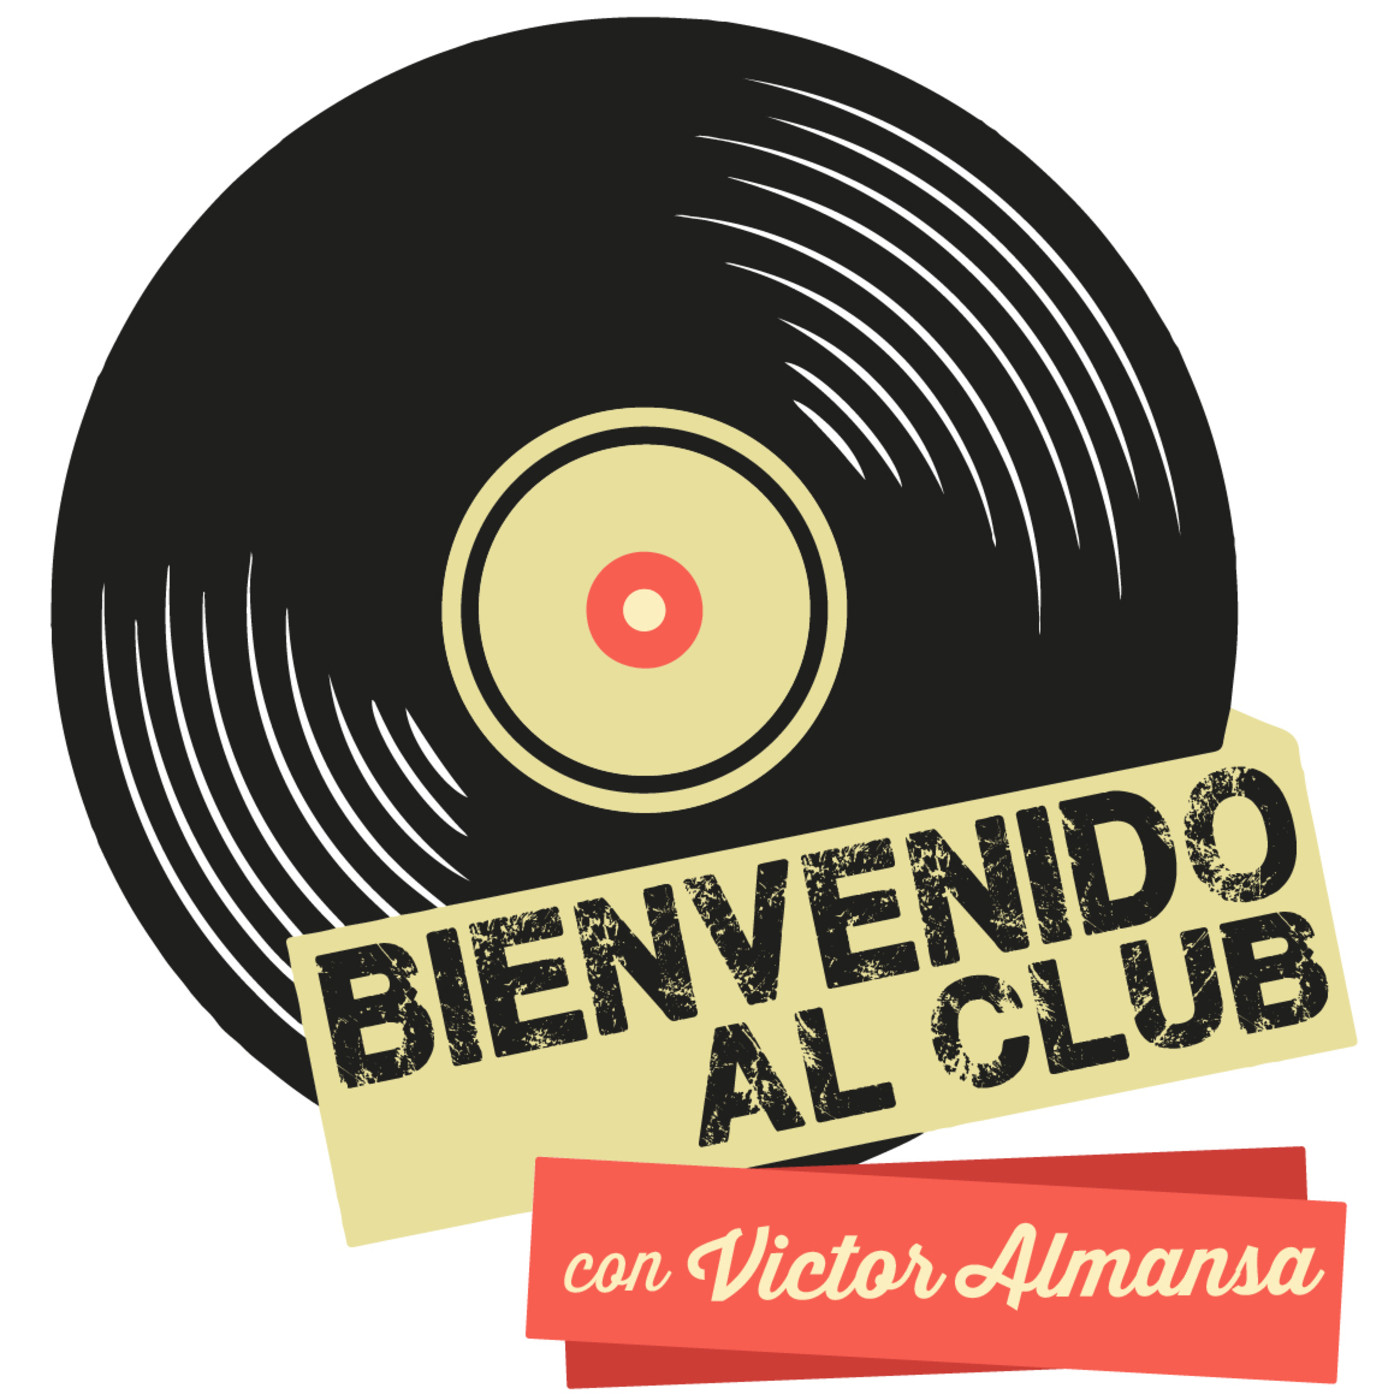 Bienvenido al Club con Victor Almansa (Miercoles 5 de Febrero de 2020)